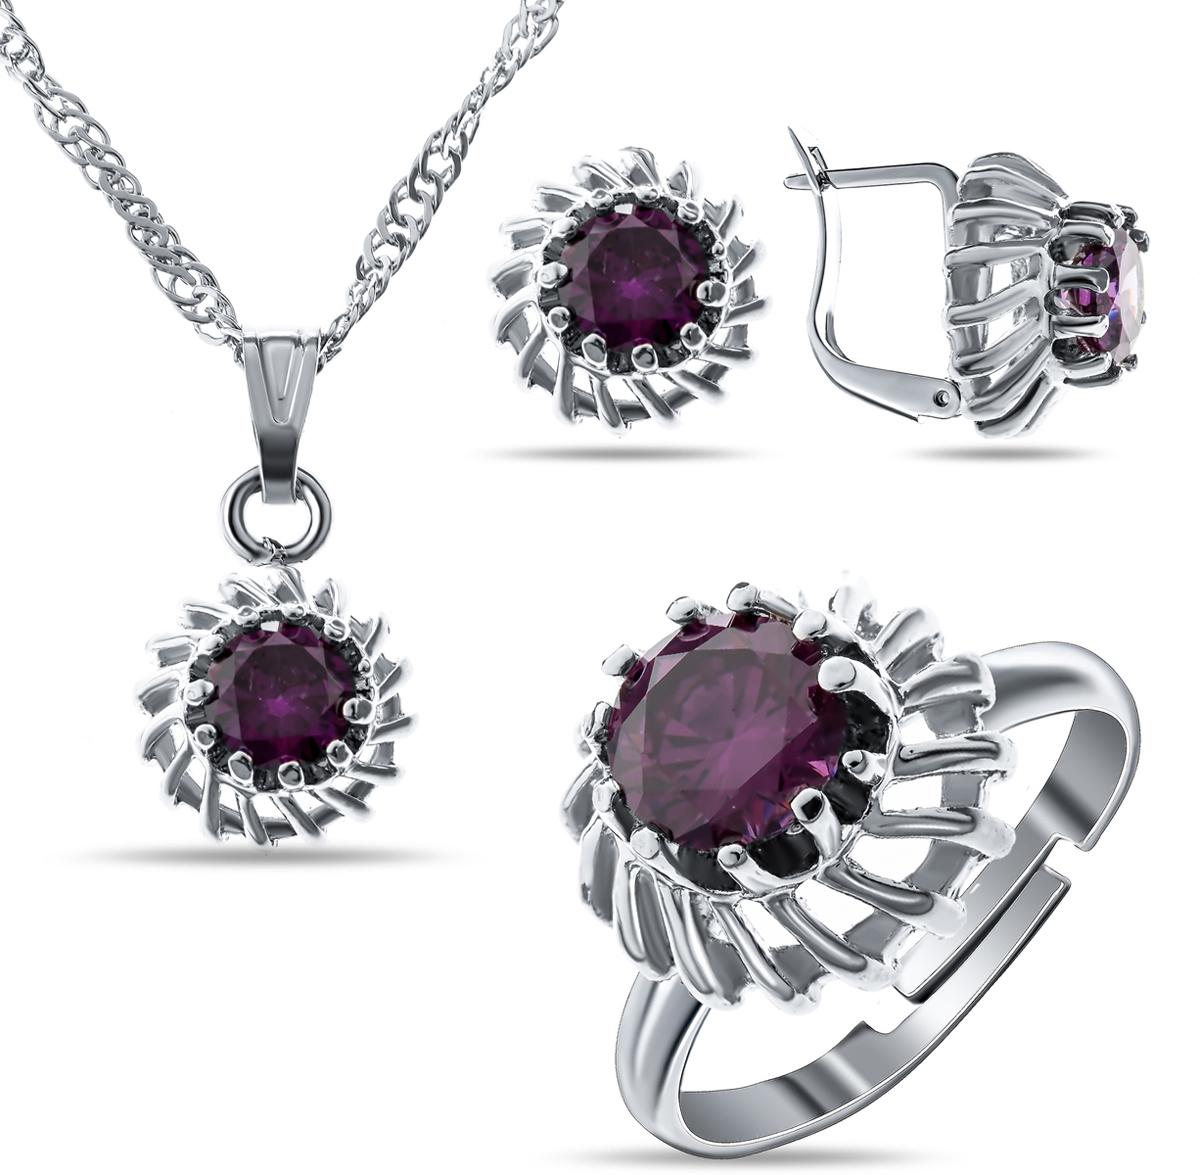 Комплект украшений Teosa: колье, серьги, кольцо, цвет: фиолетовый, серебристый. T-SET-136